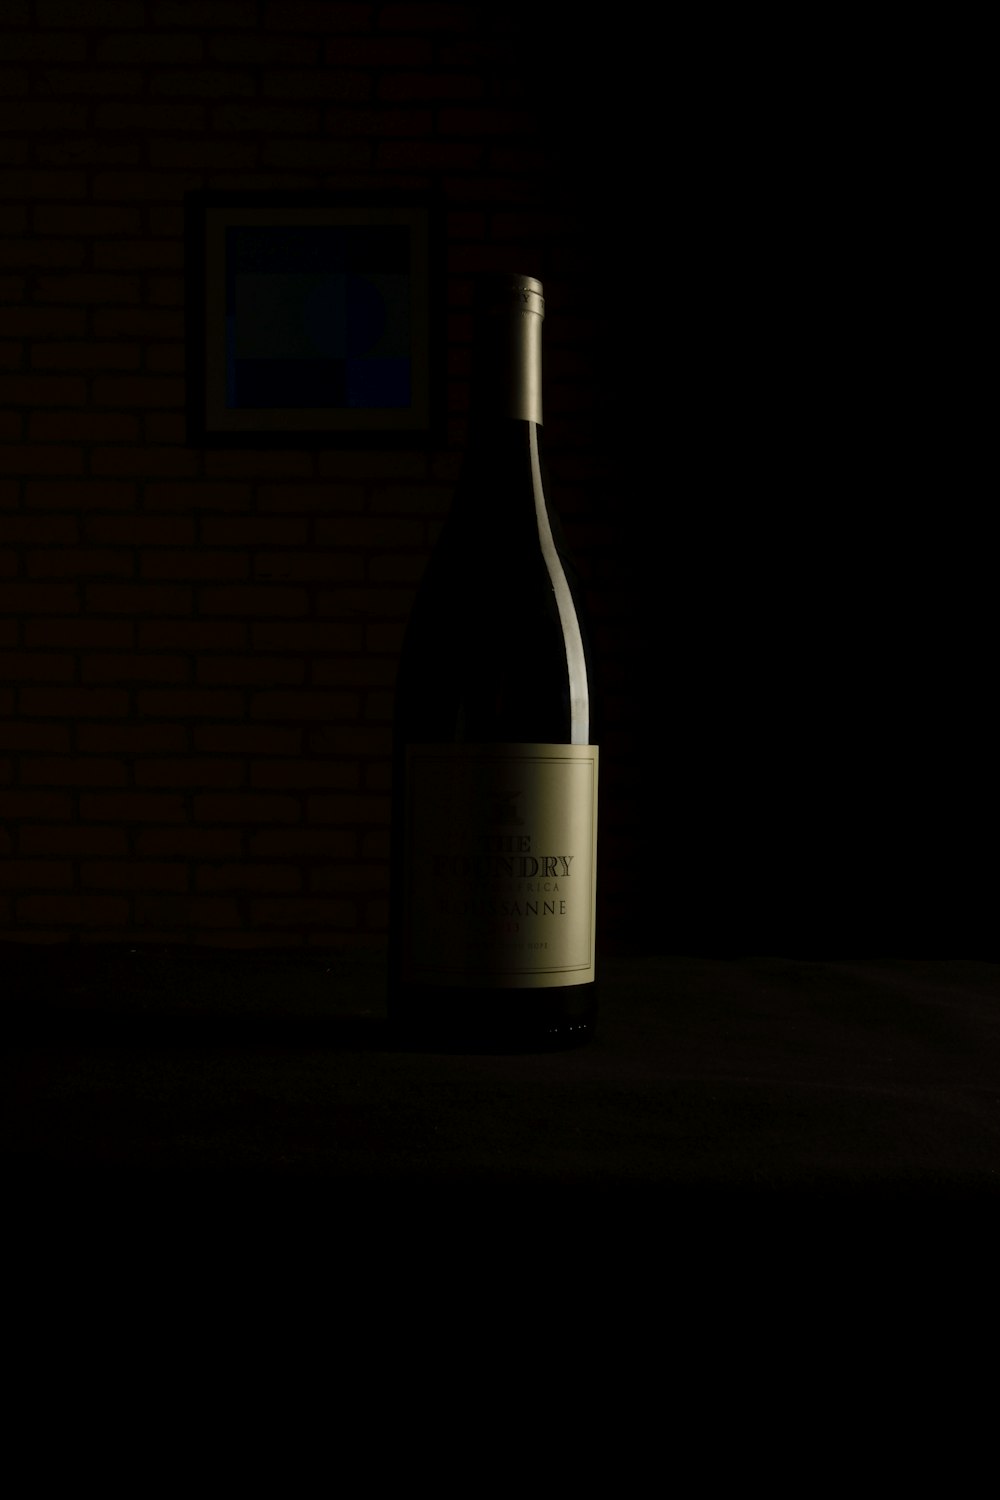 테이블 위에 놓인 와인 한 병